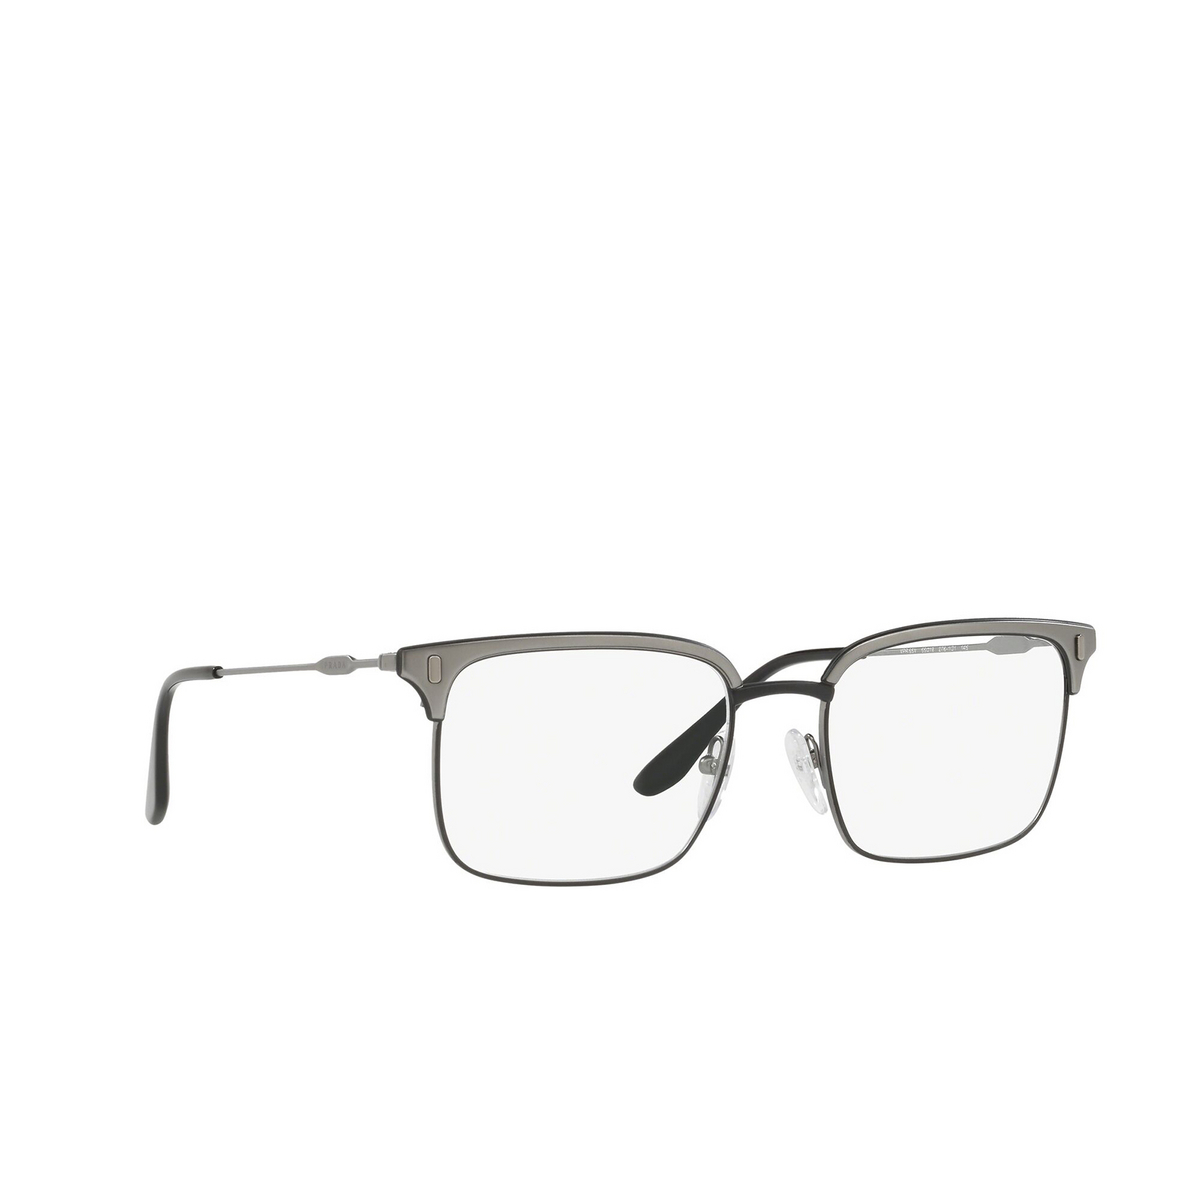 Prada® Rectangle Eyeglasses: Conceptual PR 55VV color Black / Matte Gunmetal 2781O1 - three-quarters view.